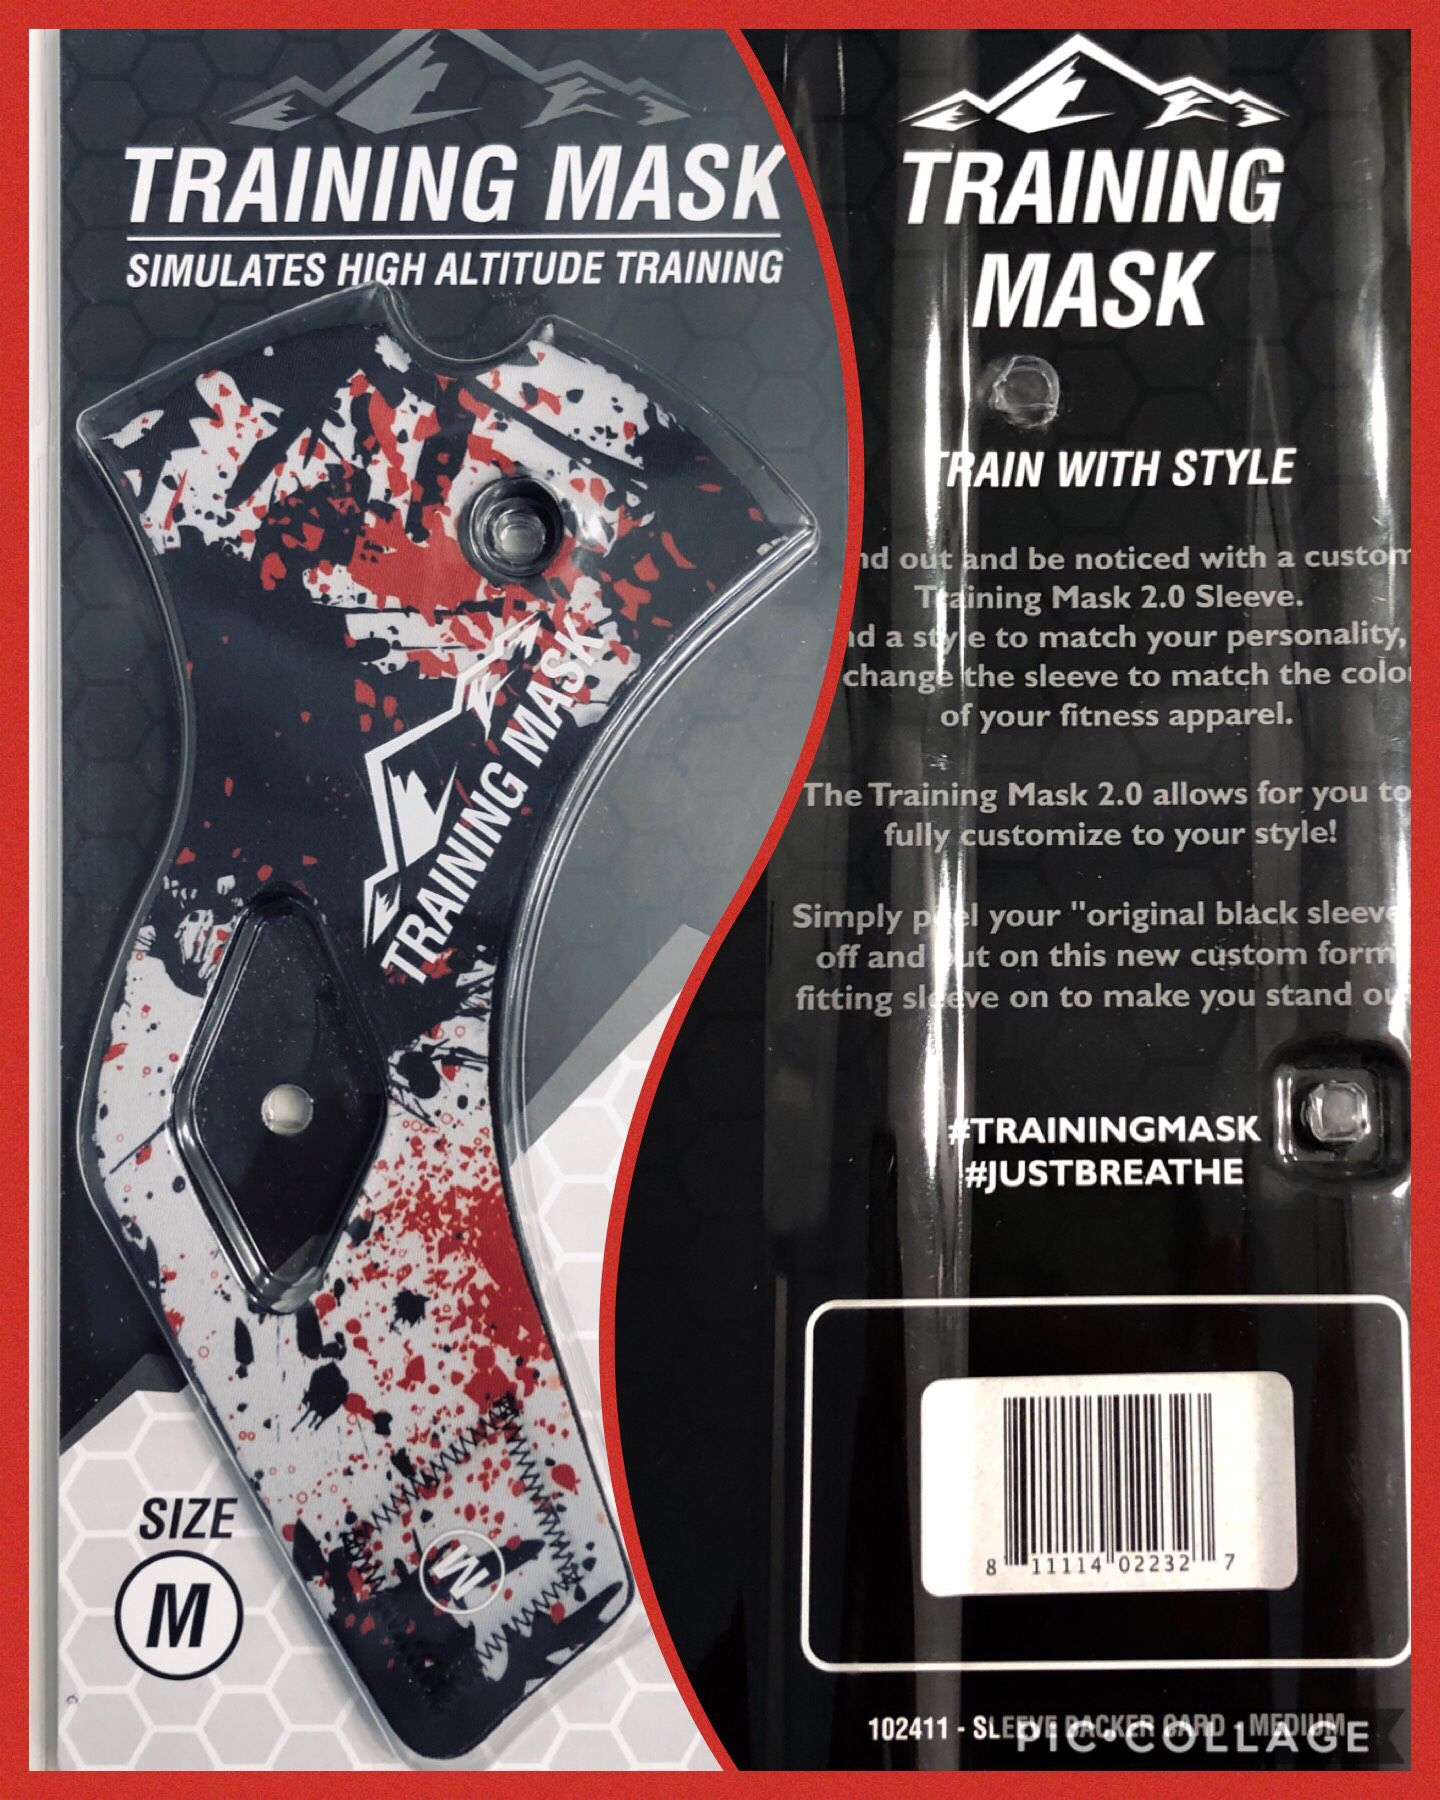 Training Mask, Size M, NEW!